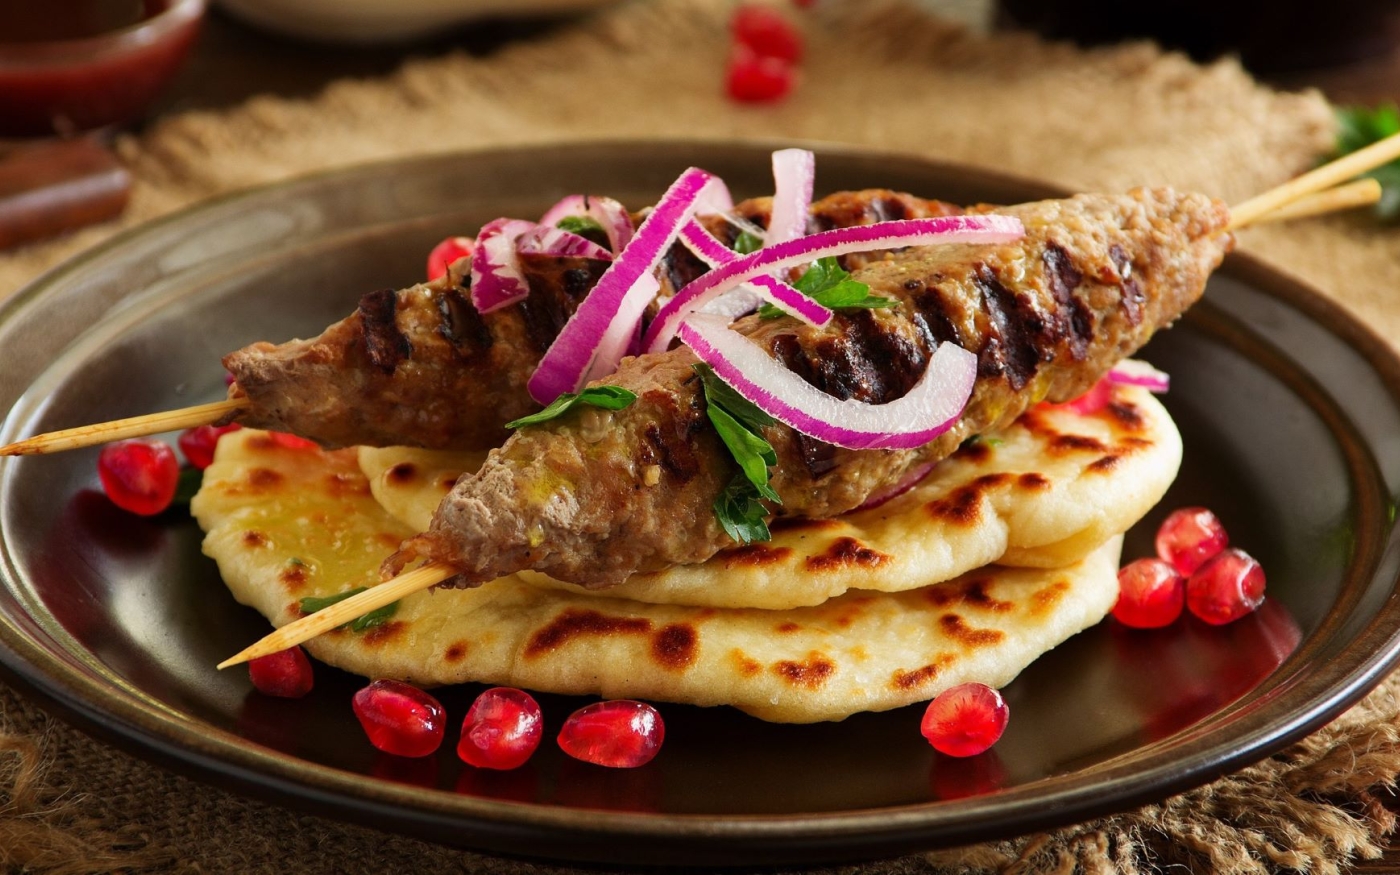 Des plats tels que le kebab sont arrivés en Europe par l’Empire ottoman (Flickr/Lesya Dolyk)